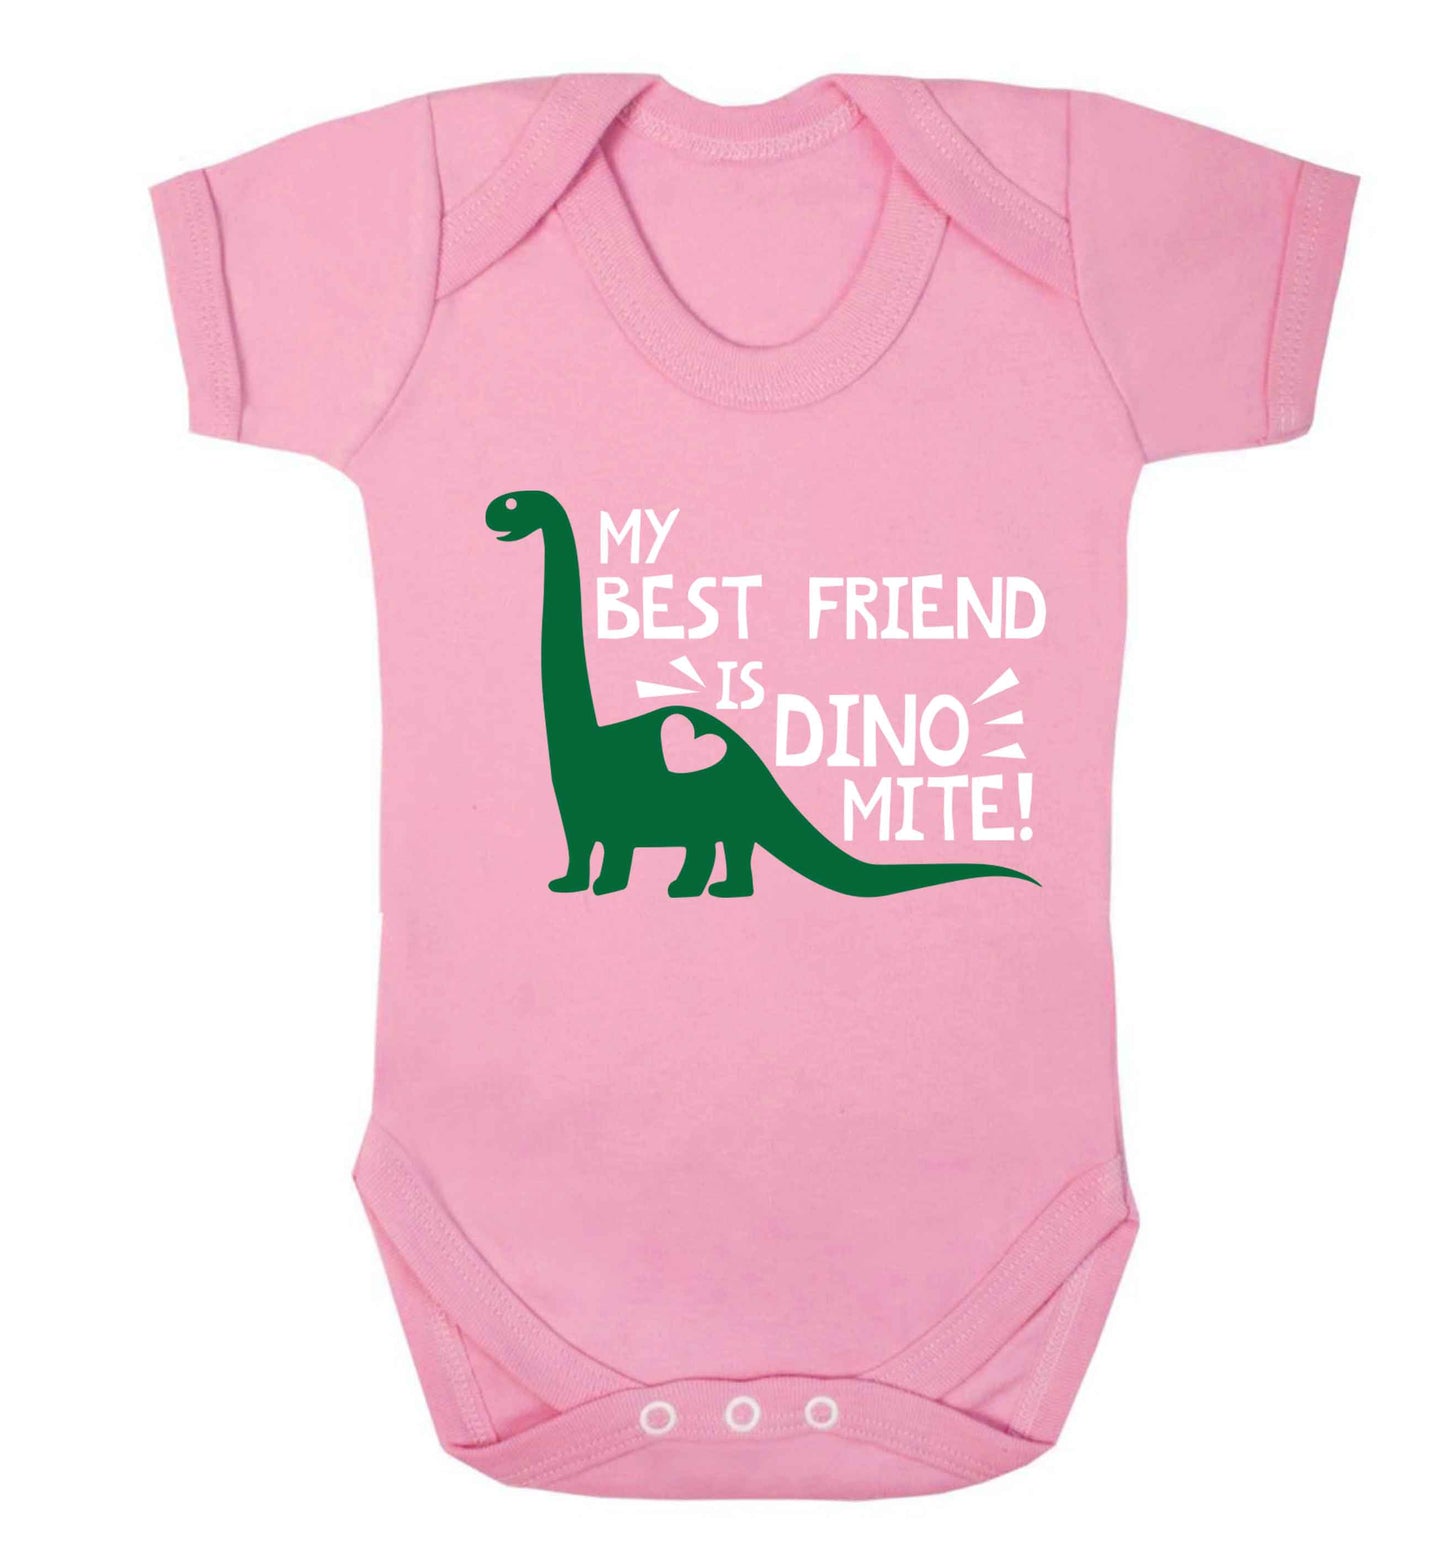 My best friend is dinomite! Baby Vest pale pink 18-24 months